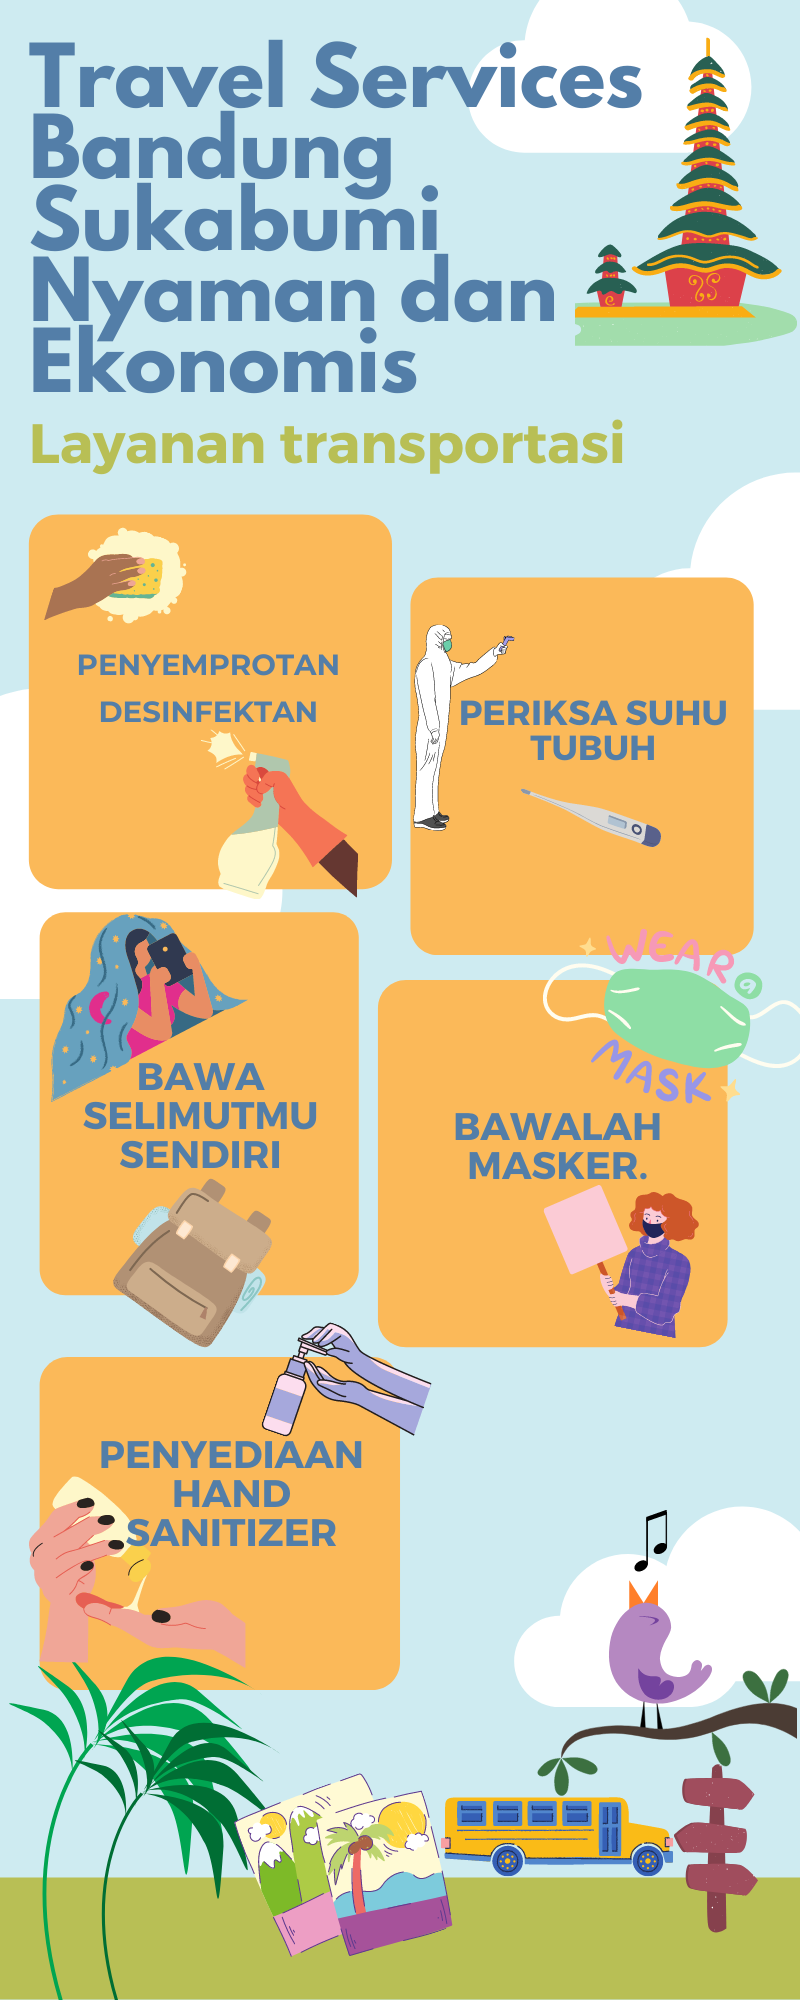 Rekomendasi Travel Bandung Sukabumi